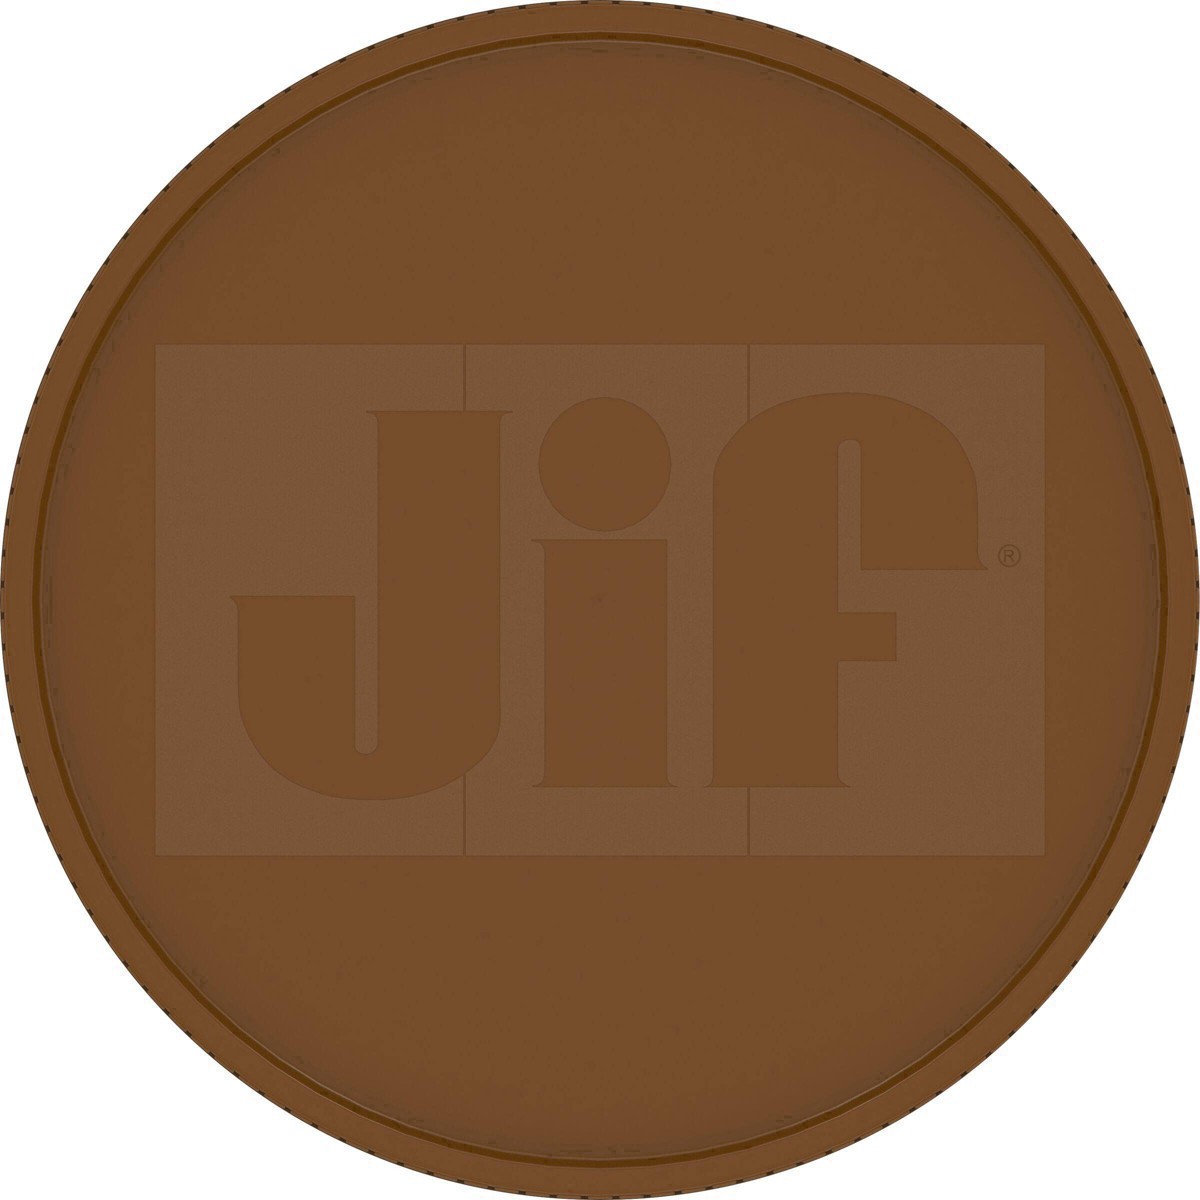 slide 13 of 41, Jif Natural Crunchy Peanut Butter, 16 oz